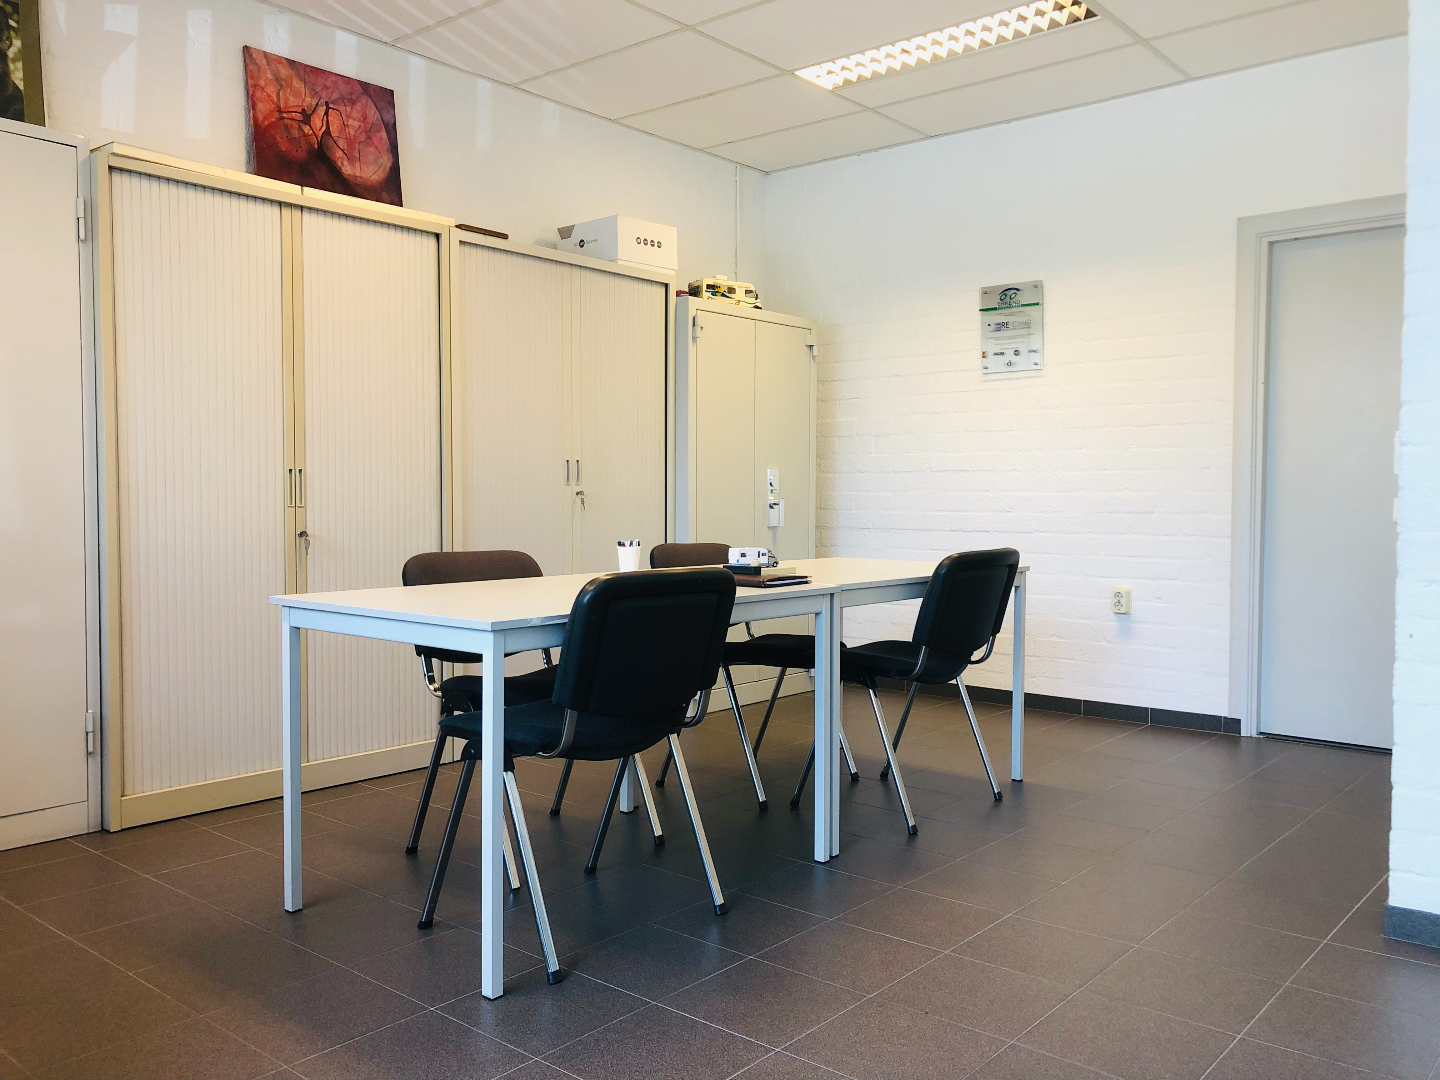 Bedrijfsruimte met kantoren gelegen op bedrijventerrein Meemortel nabij uitvalswegen. Huurprijs € 2.000,-- per maand excl. BTW. 